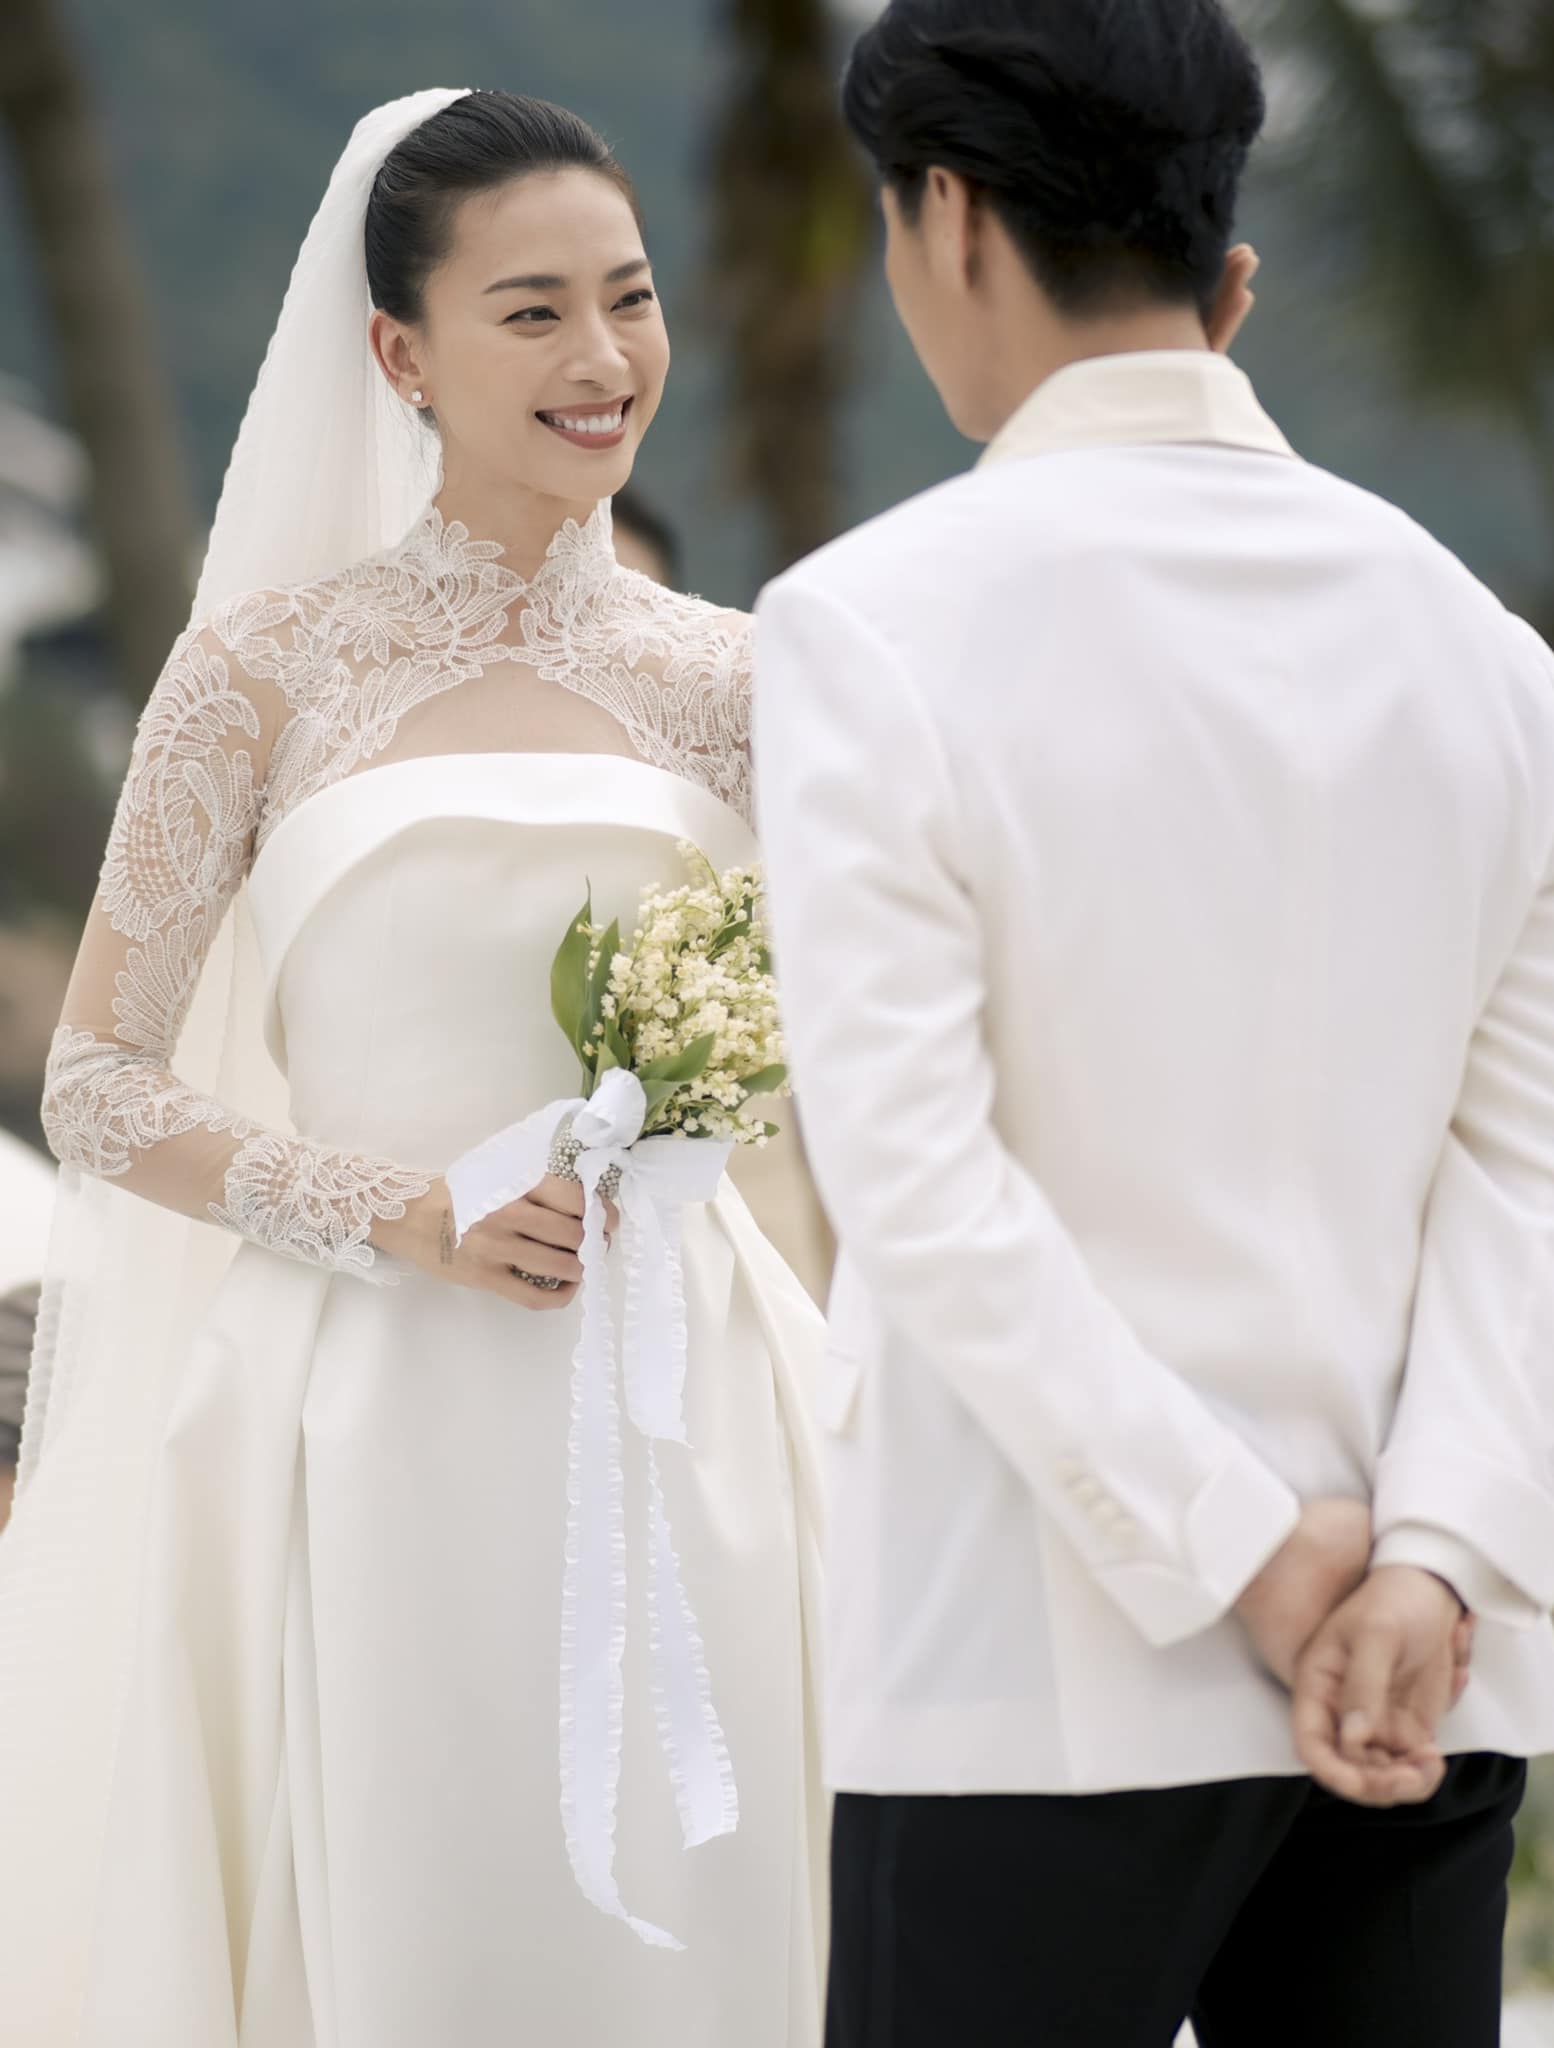 4 sao Việt được 'chốt đơn' sau khi bắt hoa cưới: Đỗ Mỹ Linh và Ngô Thanh Vân được trao lại, 1 mỹ nhân vừa nhập hội - Ảnh 4.